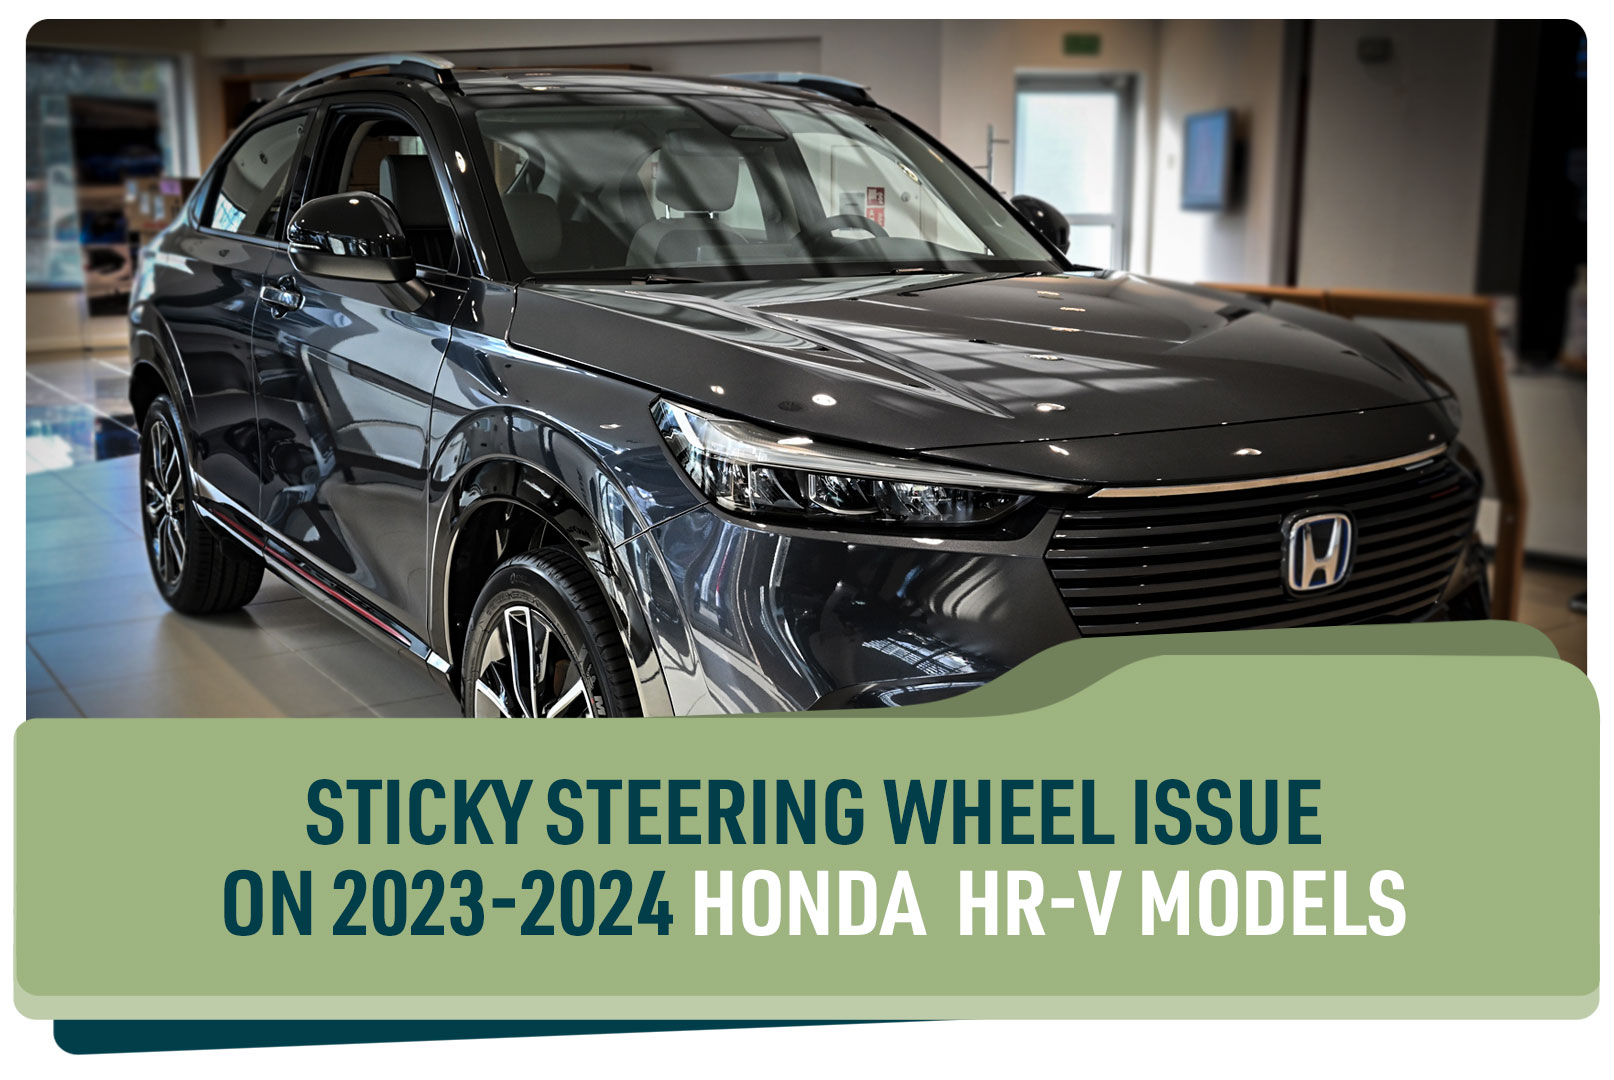 Sticky Steering on Honda HR-V model